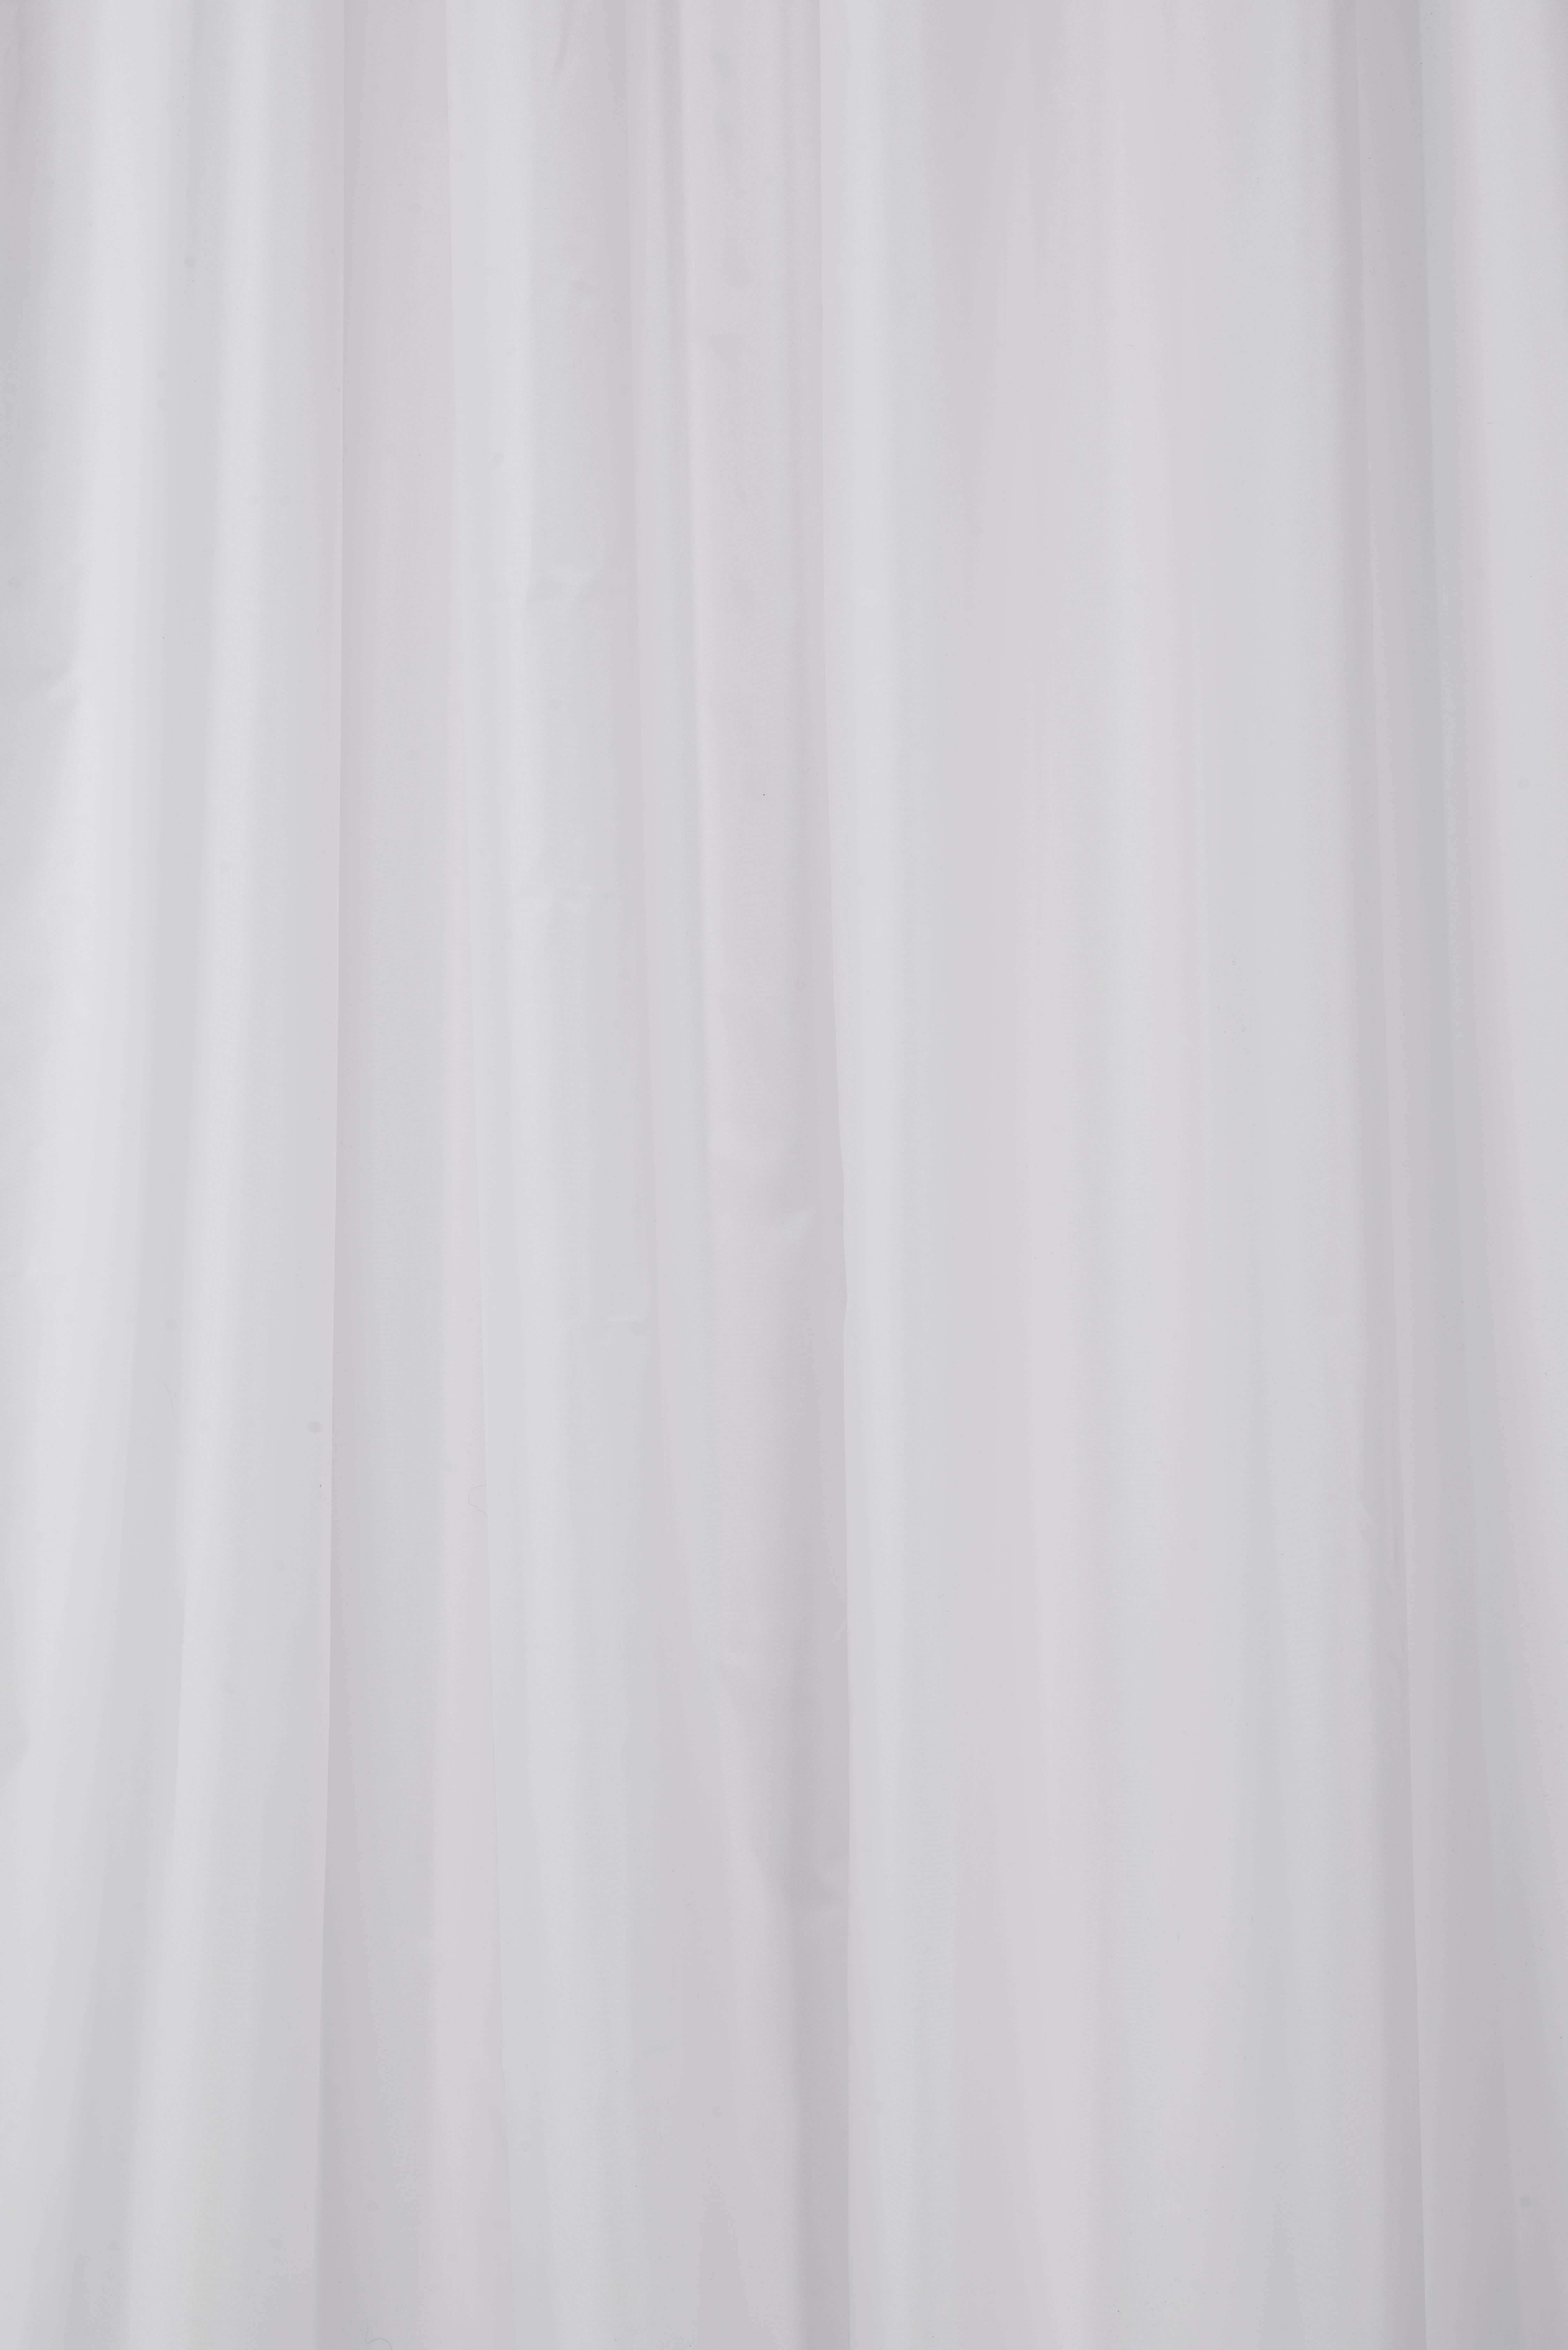 Croydex Anti-Microbial Plain Bathroom Shower Curtain - White